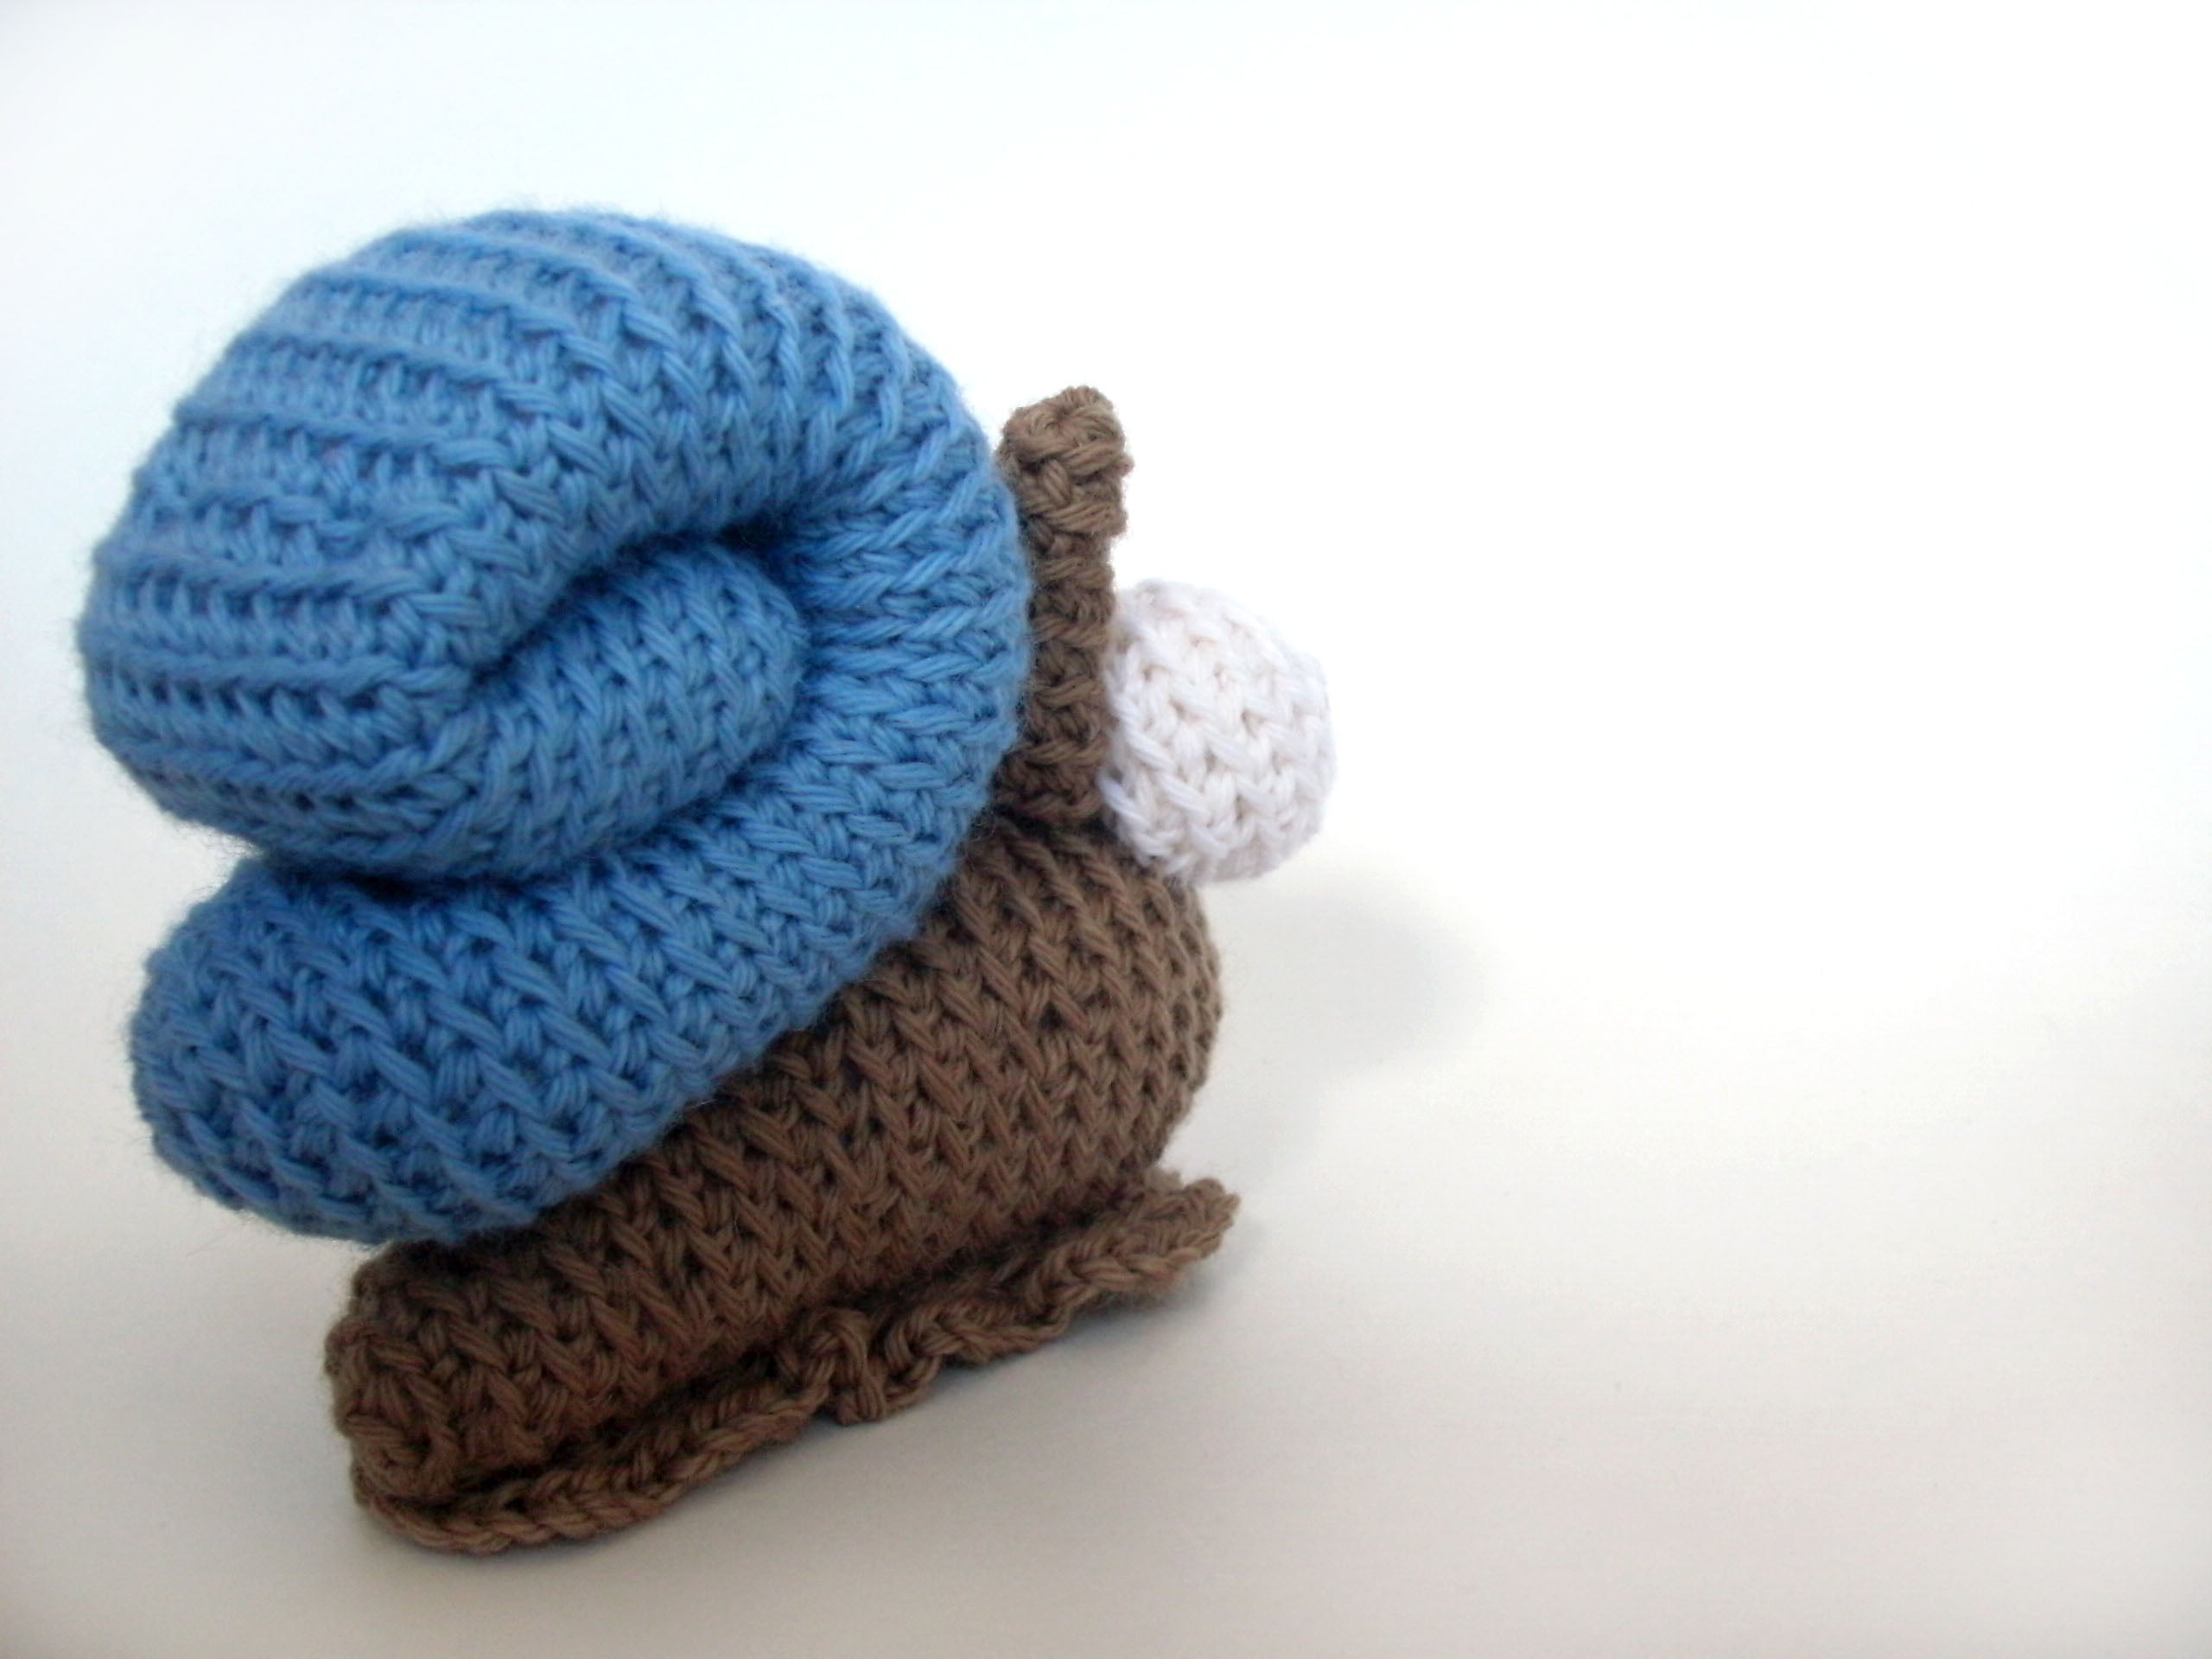 Martin the Snail Crochet Amigurumi Pattern